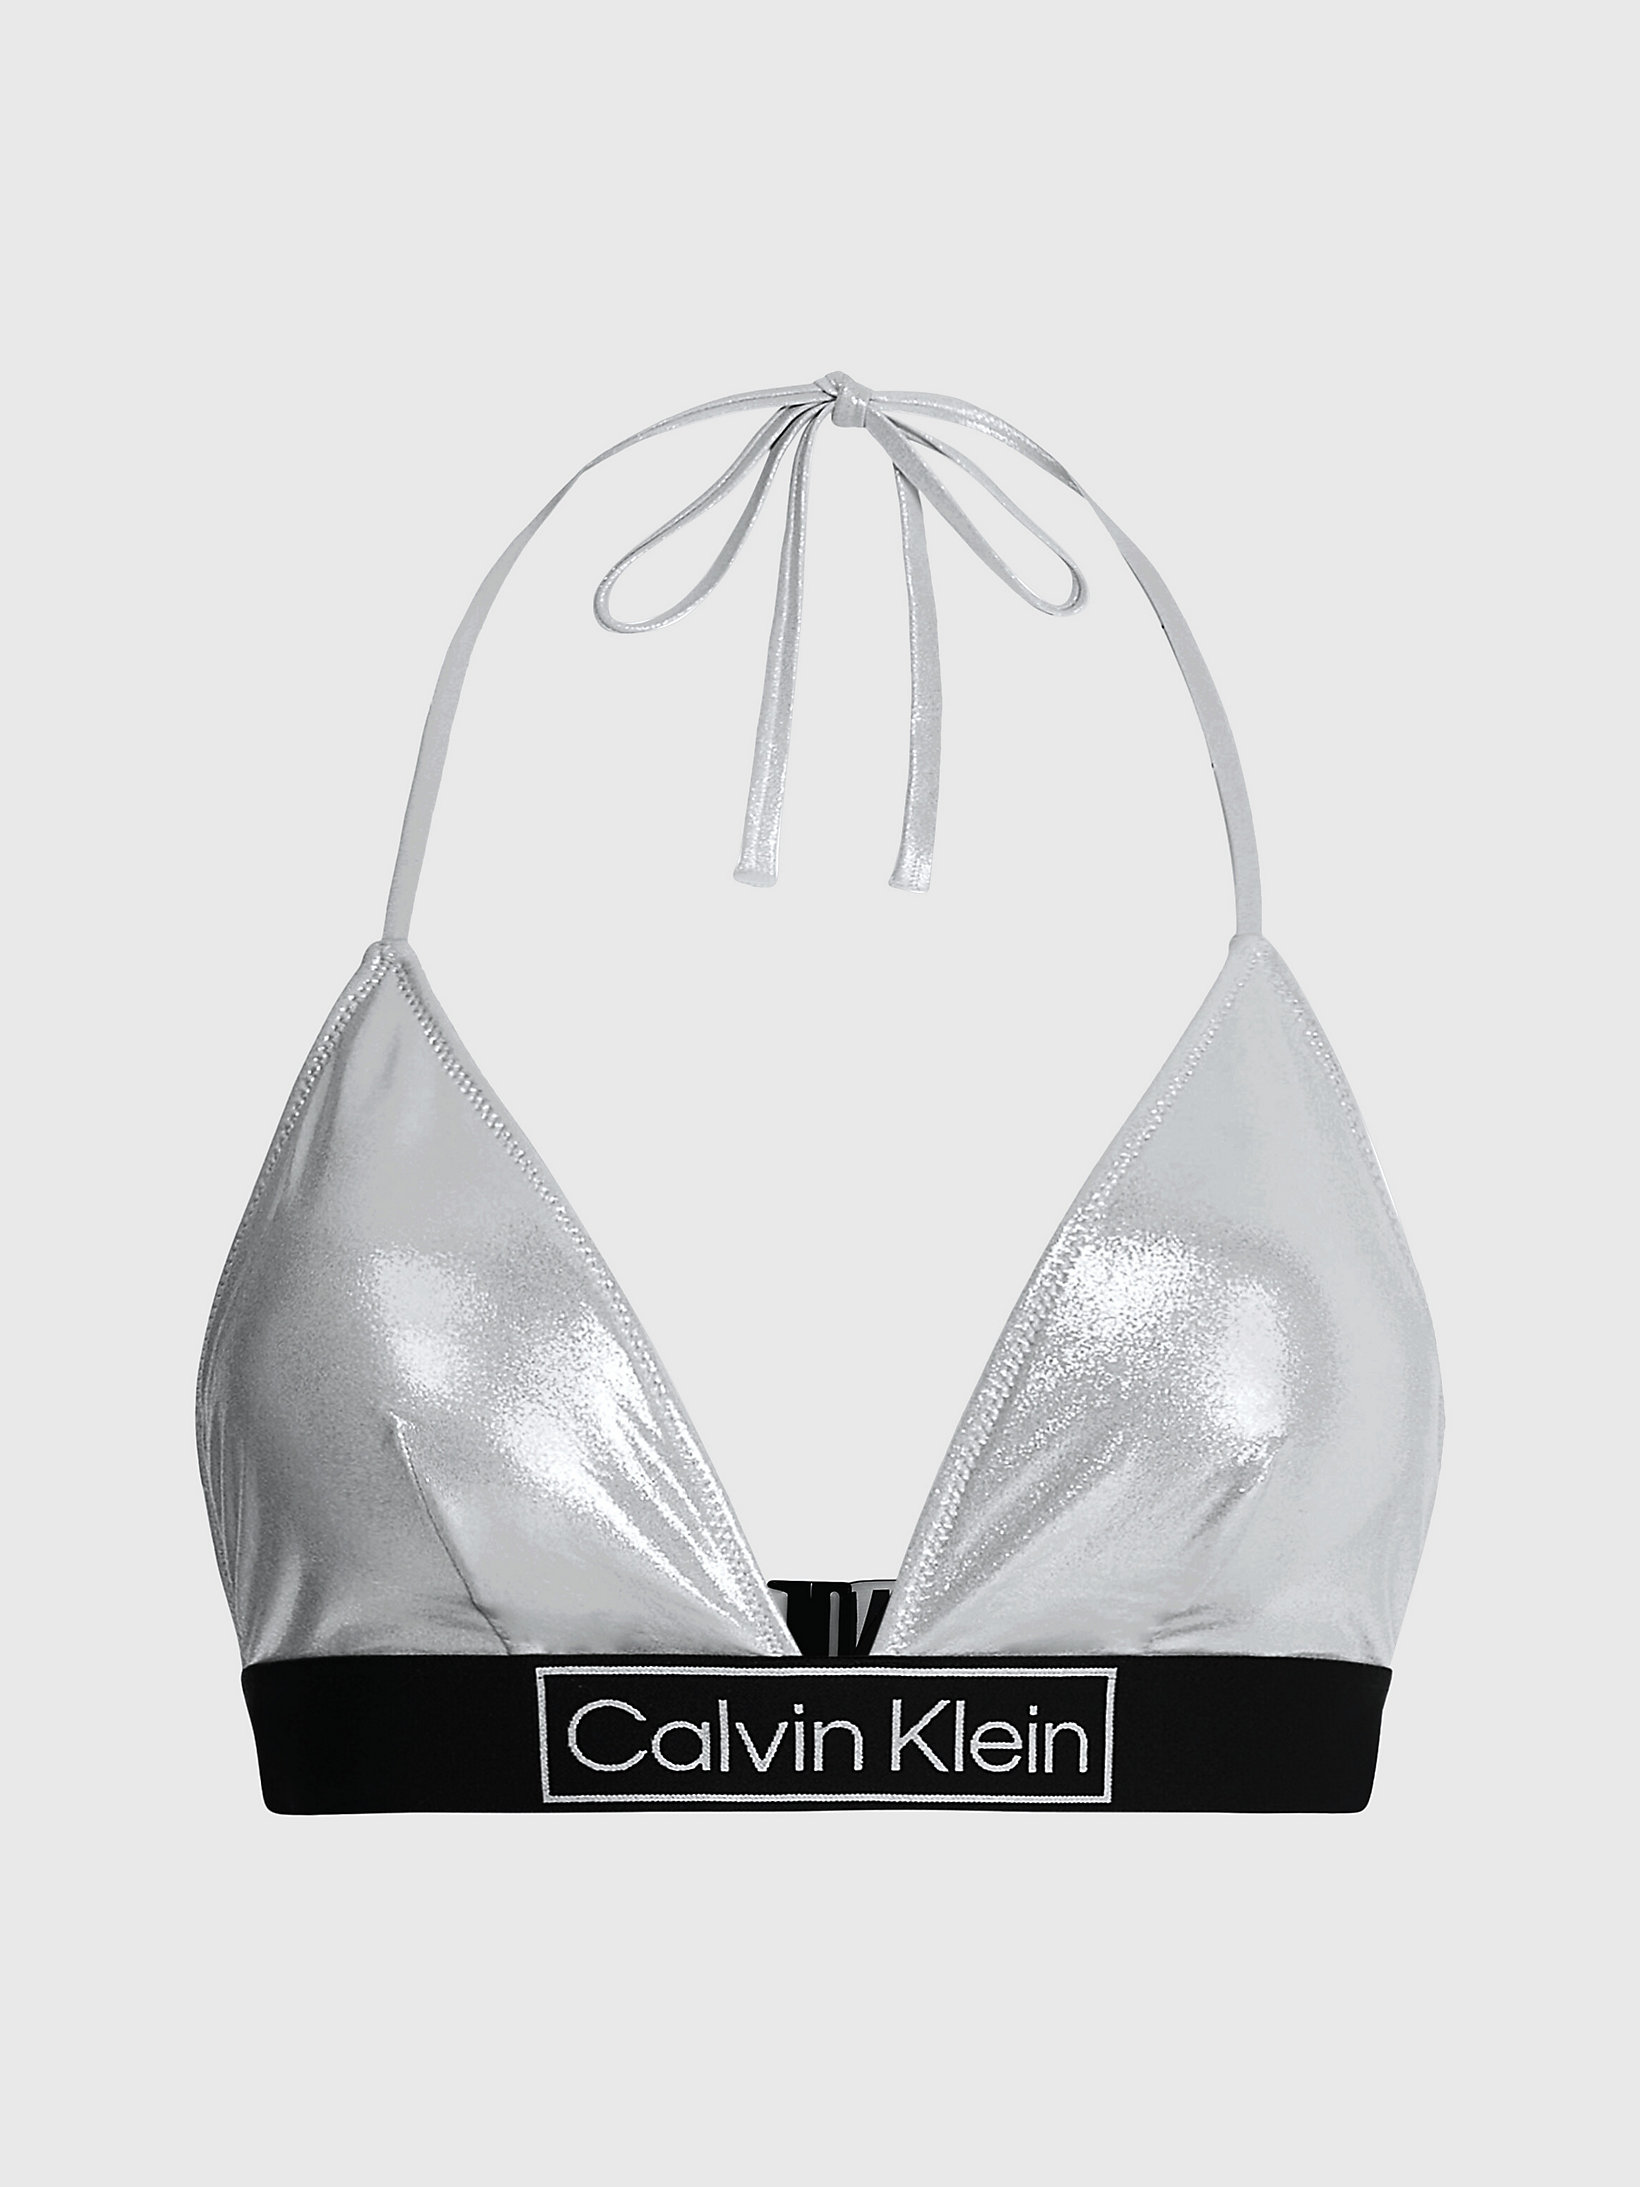 Top Bikini A Triangolo - Core Festive > Light Cast > undefined donna > Calvin Klein